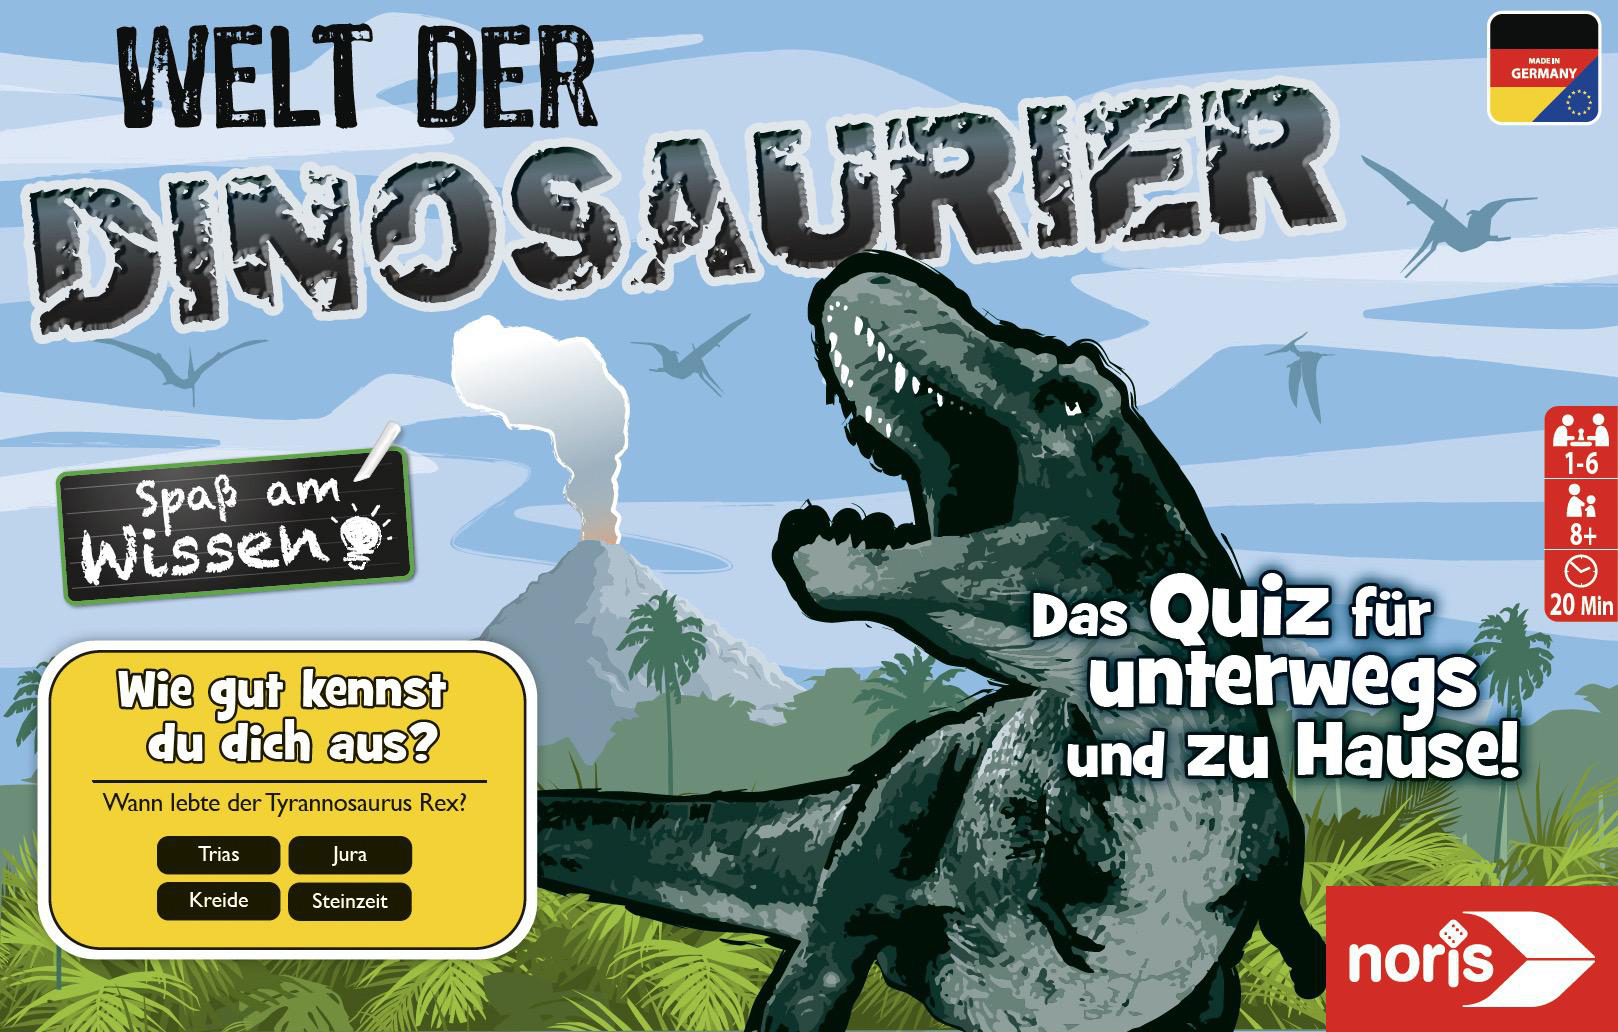 der Welt Quizspiel, NORIS Mehrfarbig Dinosaurier